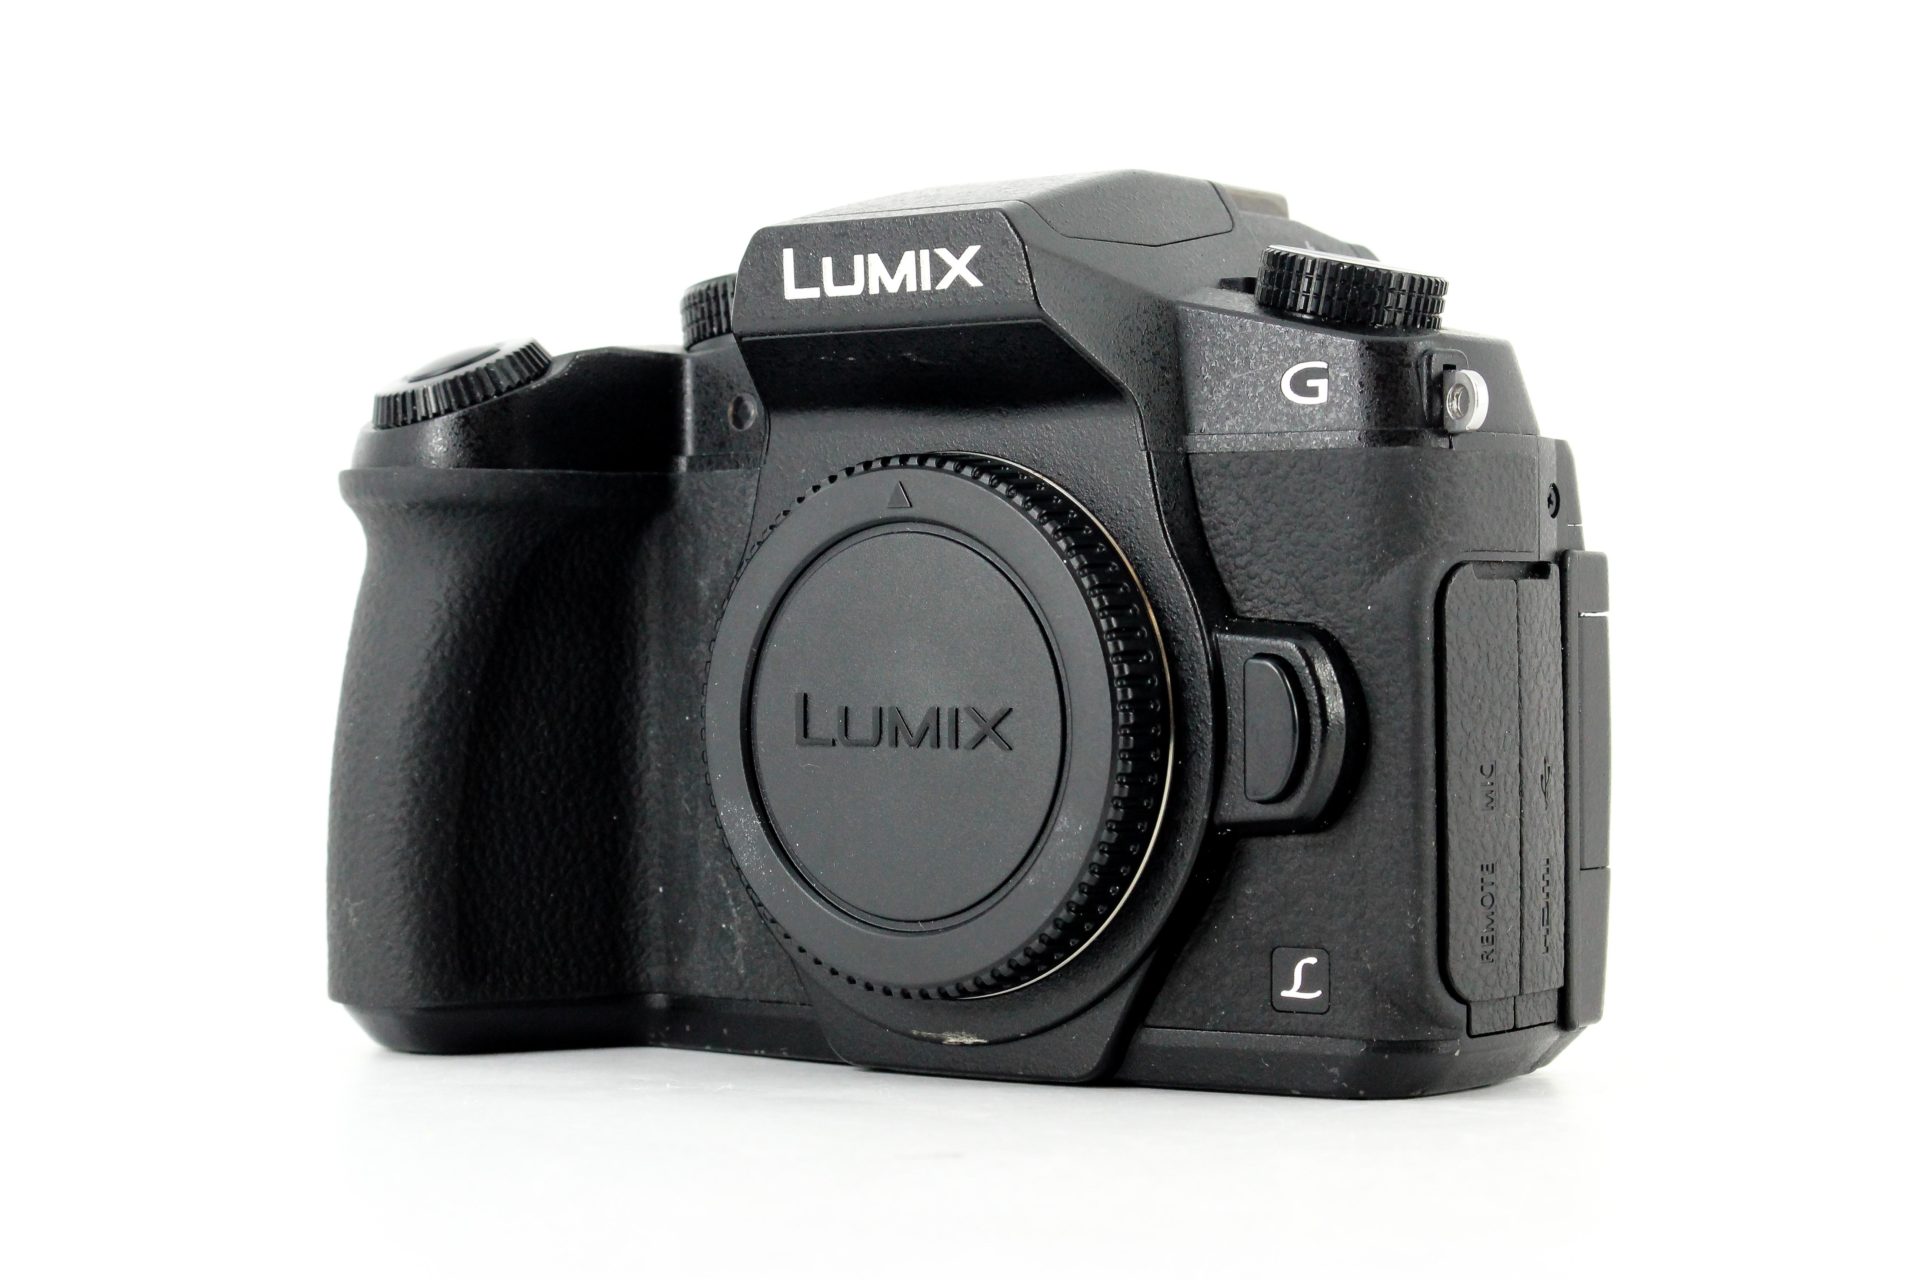 Lumix Digital Camera - and Cameras